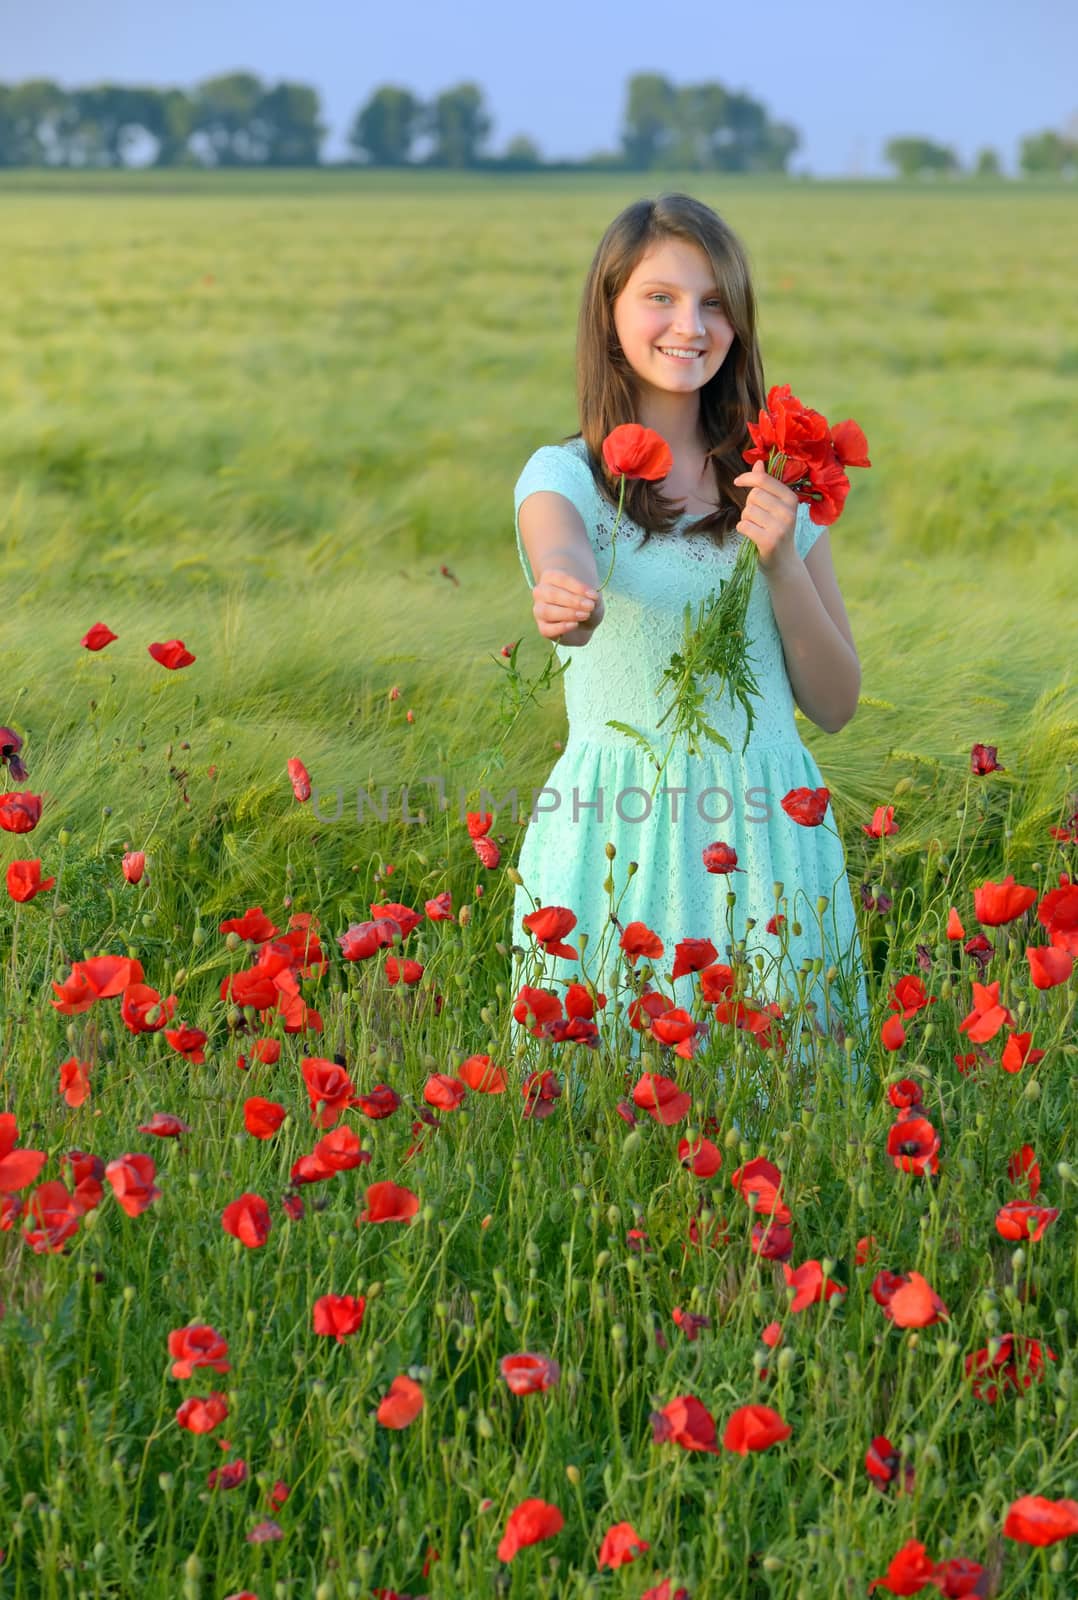 girl in poppy field by mady70